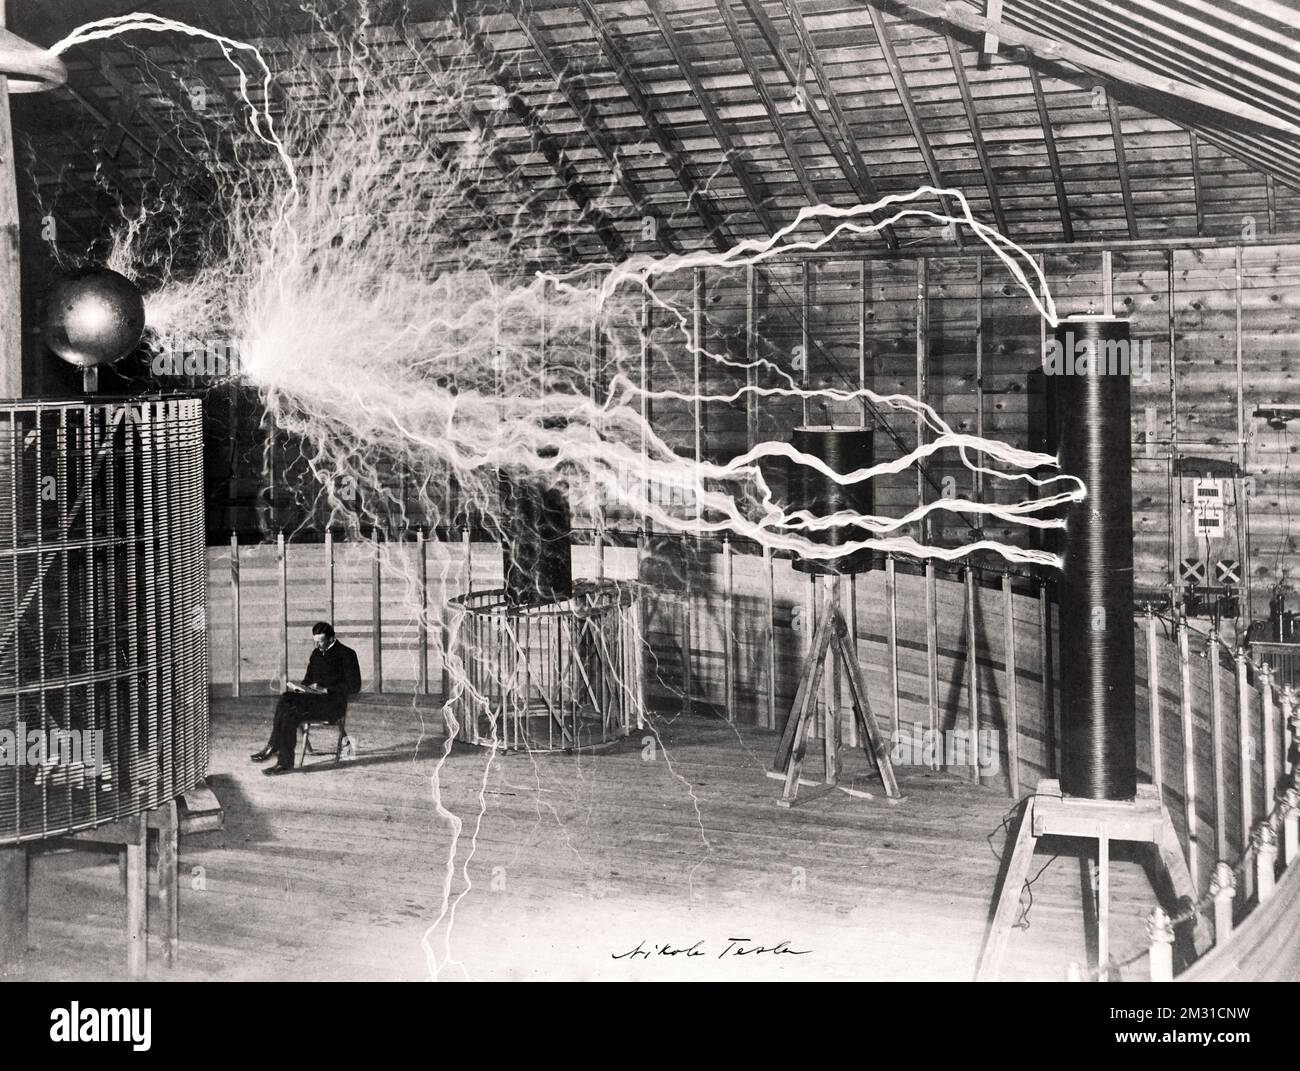 Nikola Tesla erzeugt mit seiner Ausrüstung zur Erzeugung von Hochfrequenz-Wechselströmen in seinem Labor in Colorado Springs künstliche „Blitze“. Datum: 1899-1900. Nikola Tesla war ein serbisch-amerikanischer Erfinder, Elektroingenieur, Maschinenbauingenieur und Zukunftswissenschaftler, der am besten für seinen Beitrag zur Entwicklung des modernen Wechselstromsystems bekannt ist. Eine optimierte Version eines Originalfotos. Stockfoto